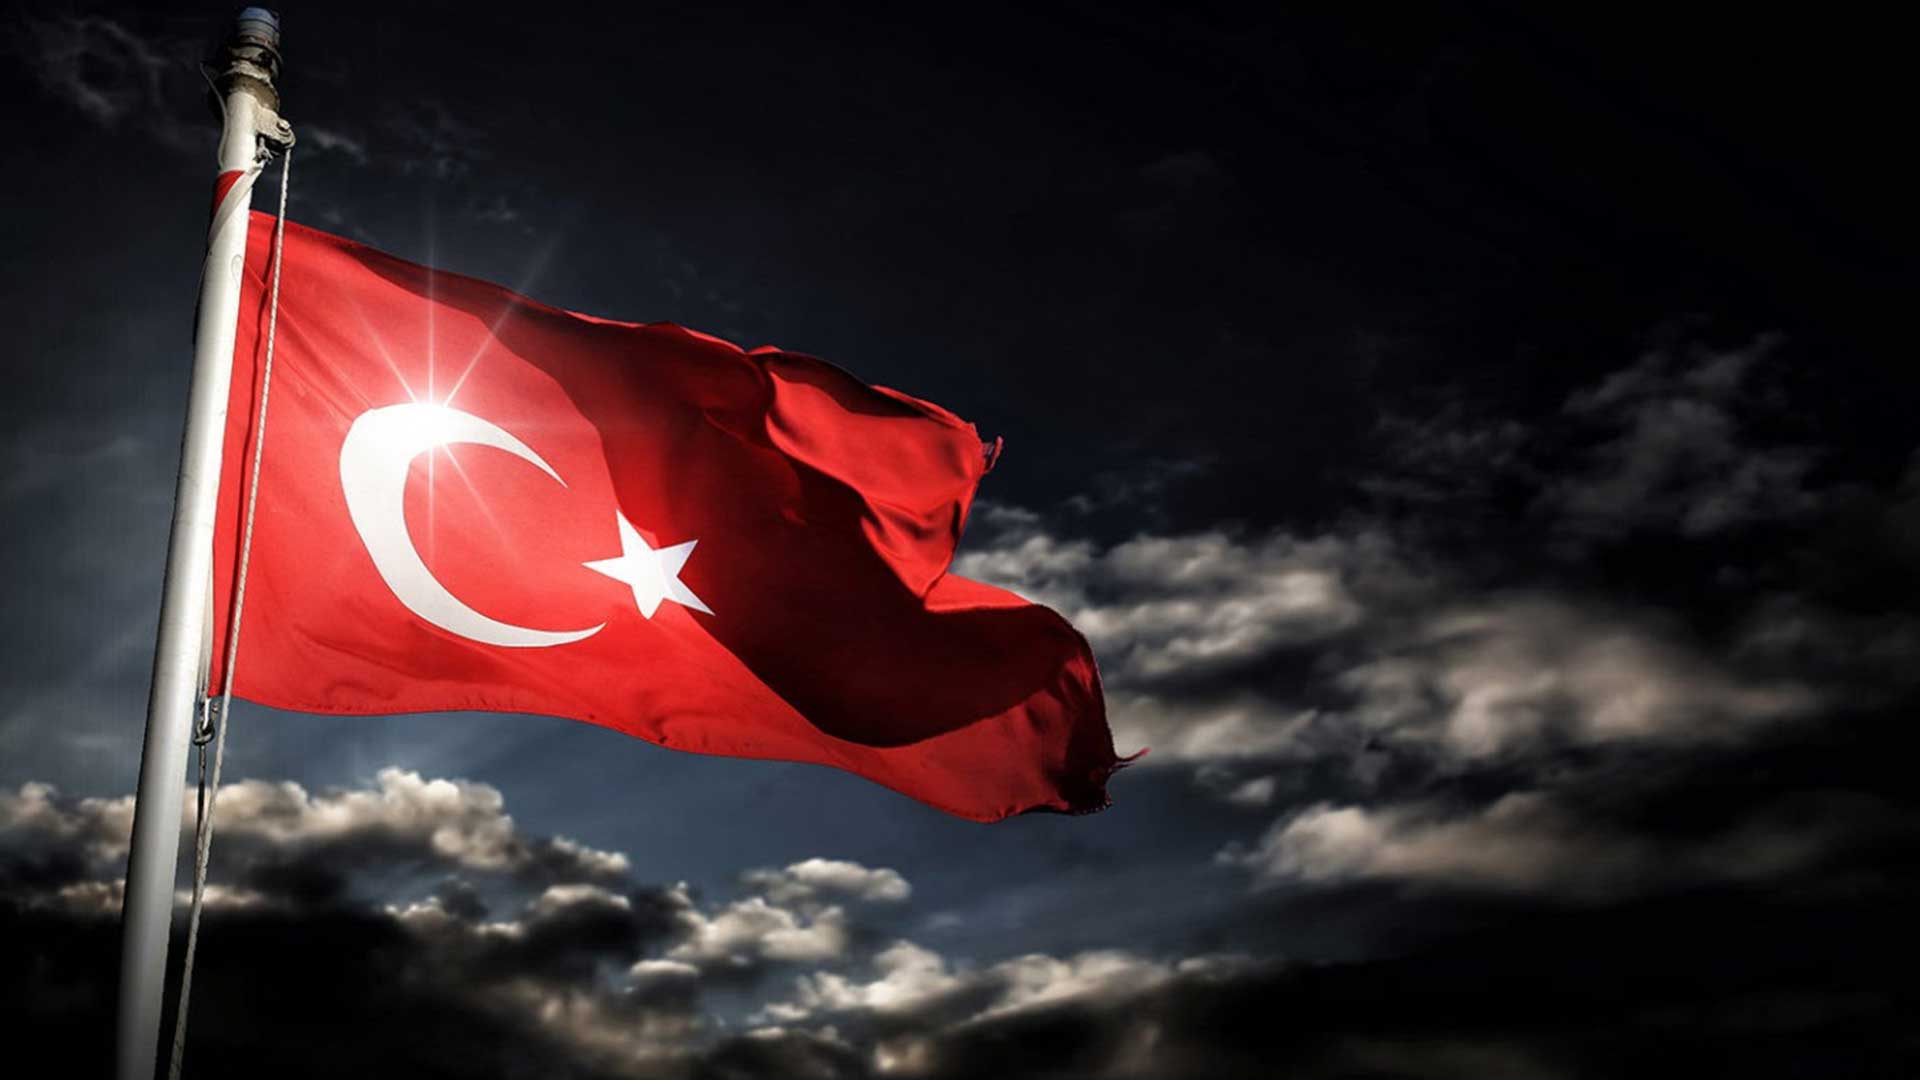 turk bayragi resimleri 2020 11